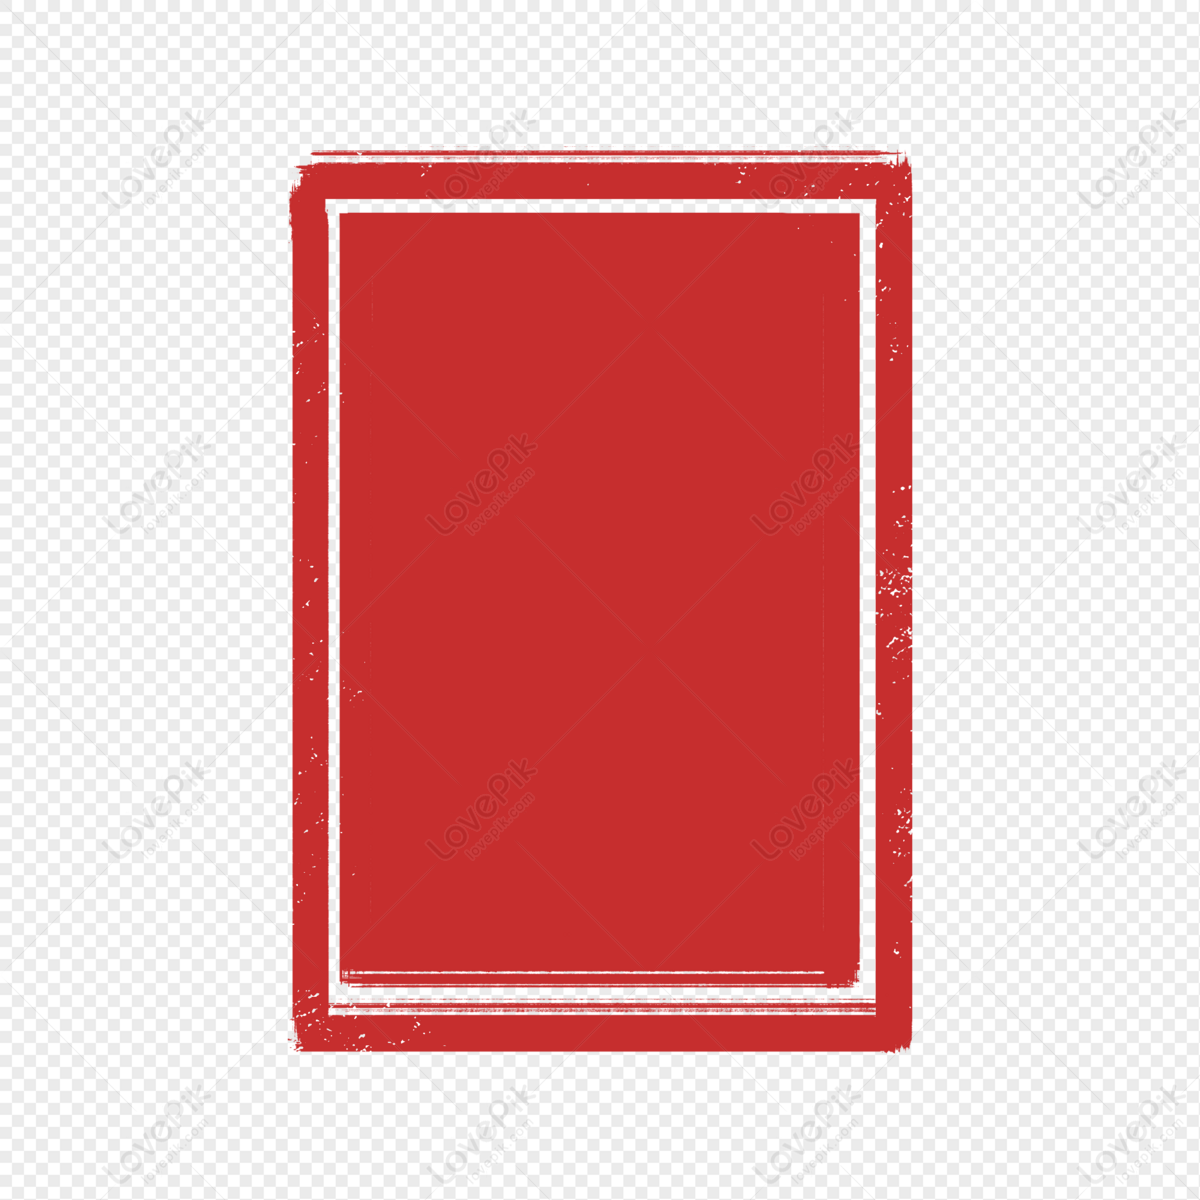 Hình ảnh Retro Tem Vuông đỏ đô 2024 sẽ làm bạn lạc quan và phấn khích hơn với những thiết kế đậm chất vintage. Với màu đỏ đô nổi bật cùng họa tiết tem vuông đầy phong cách, bức ảnh sẽ đem lại nét cổ điển và độc đáo cho mọi không gian. Hãy chiêm ngưỡng và cảm nhận sự tinh tế của ảnh này.